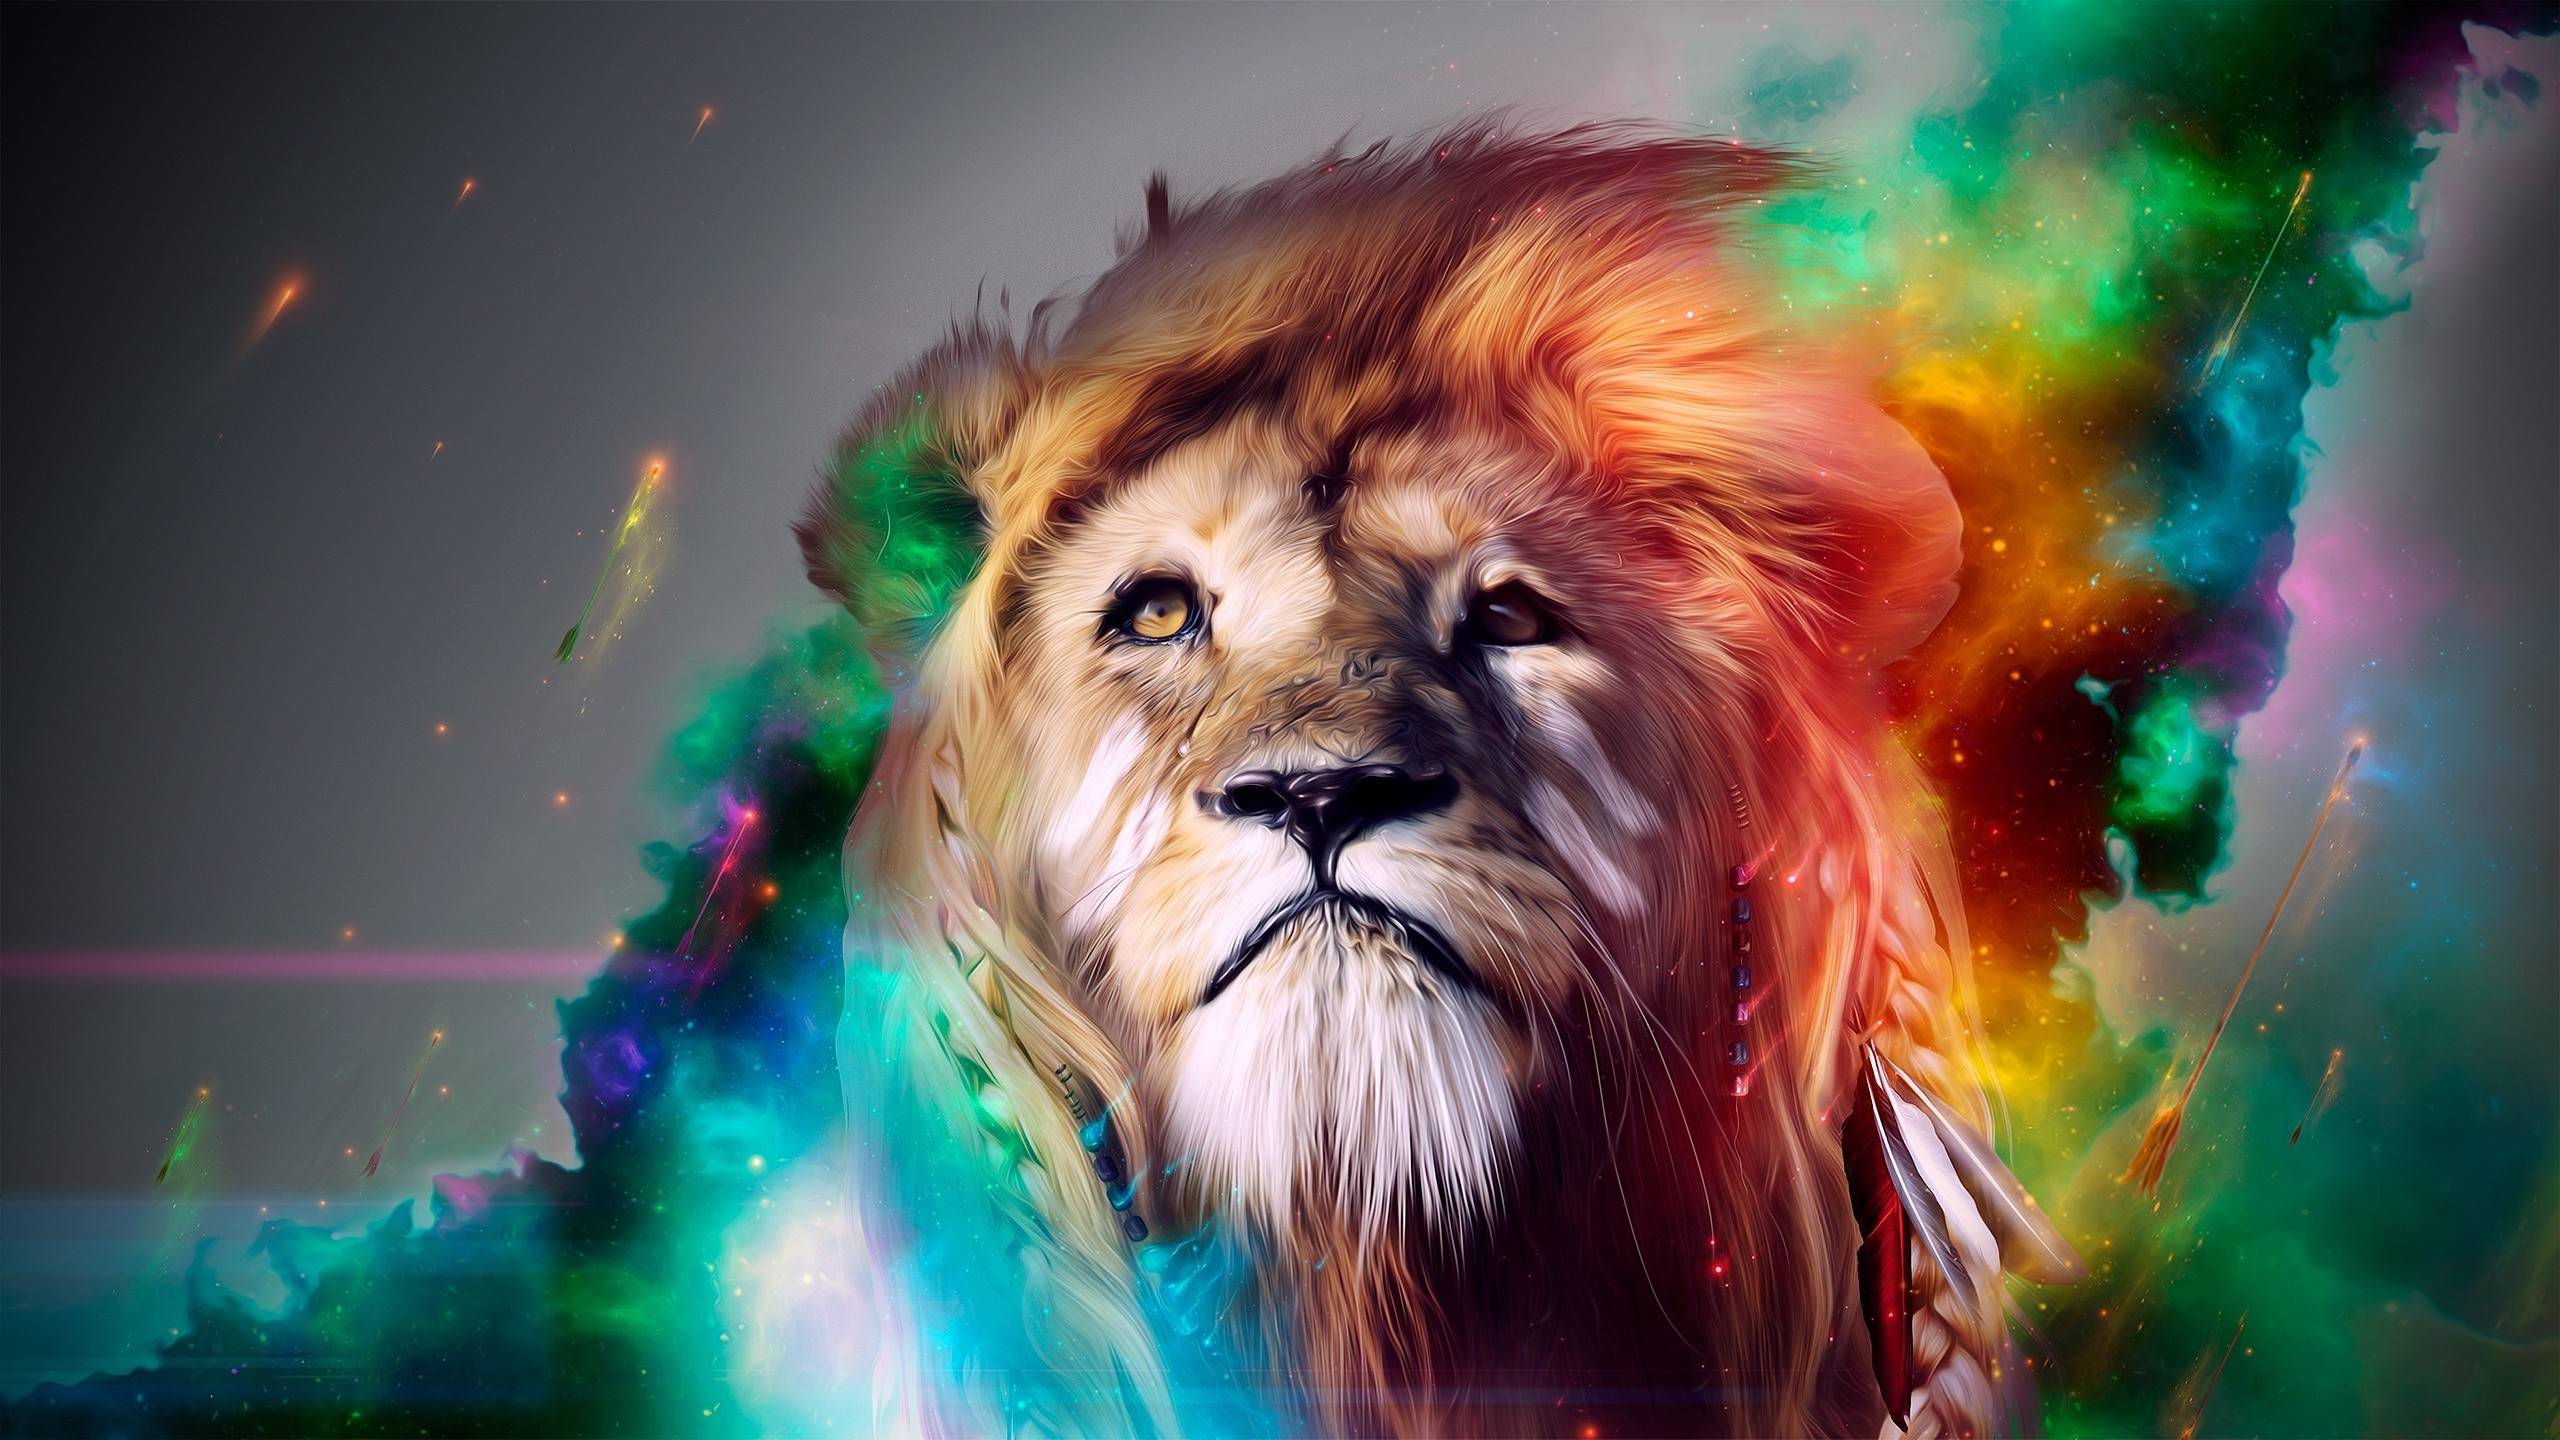 Lion Smoke Wallpaper